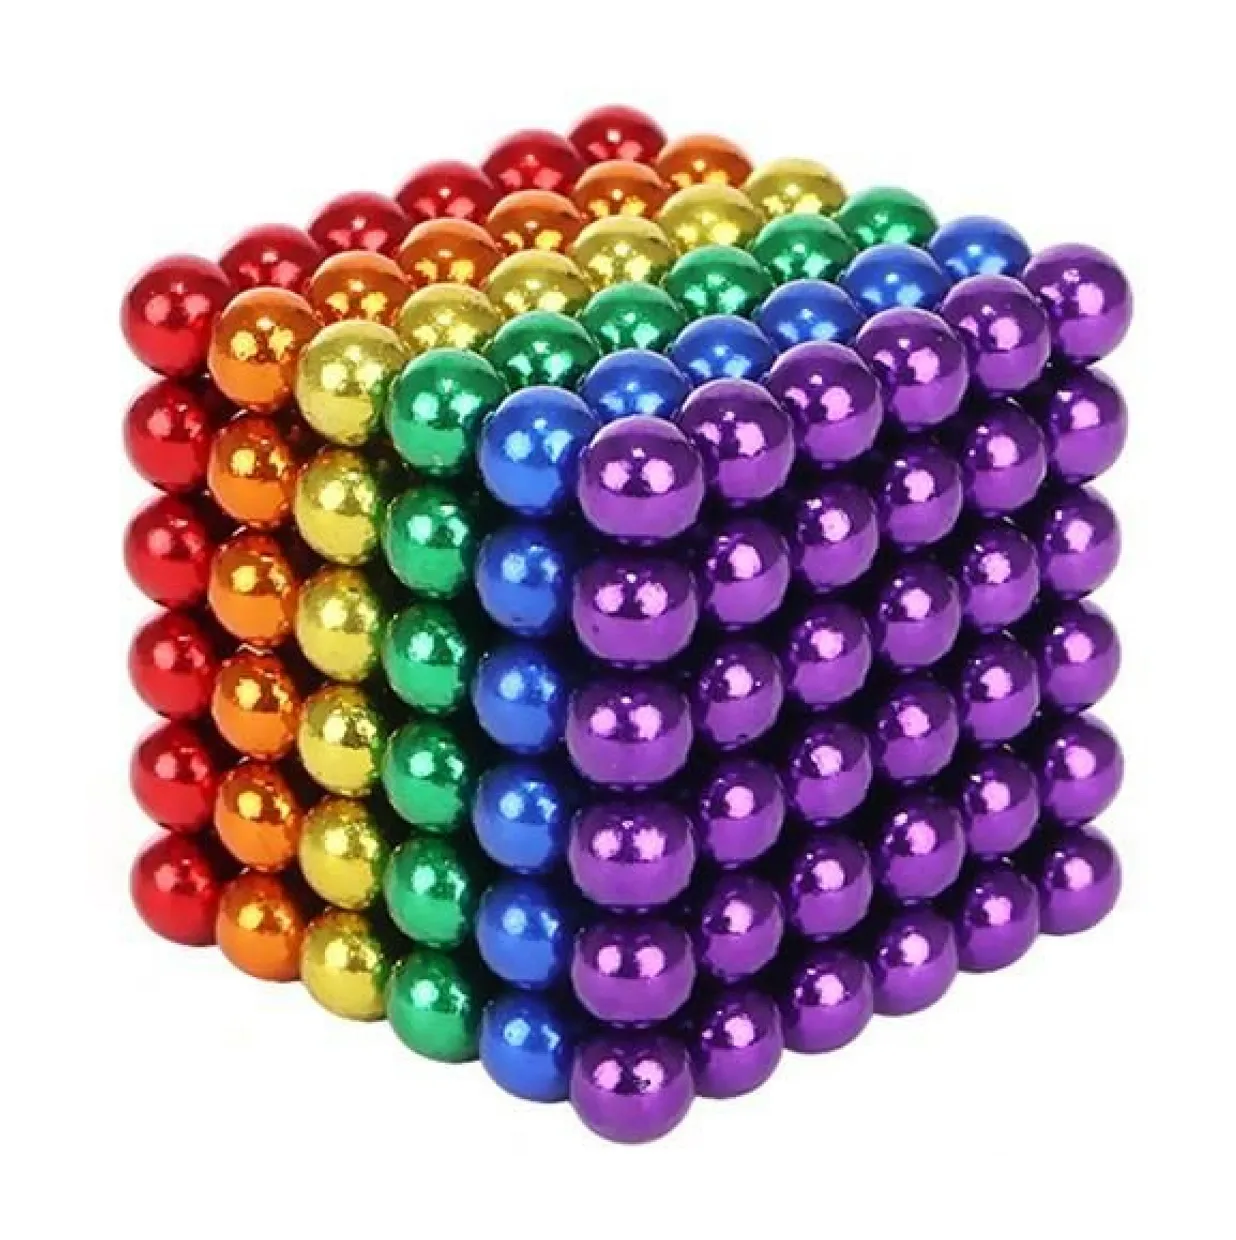 Magnetische Balletjes – Magnetic Balls – Neocube Magneetballetjes – Neocube – Bucky Balls – Magneetballetjes Speelgoed – Regenboog